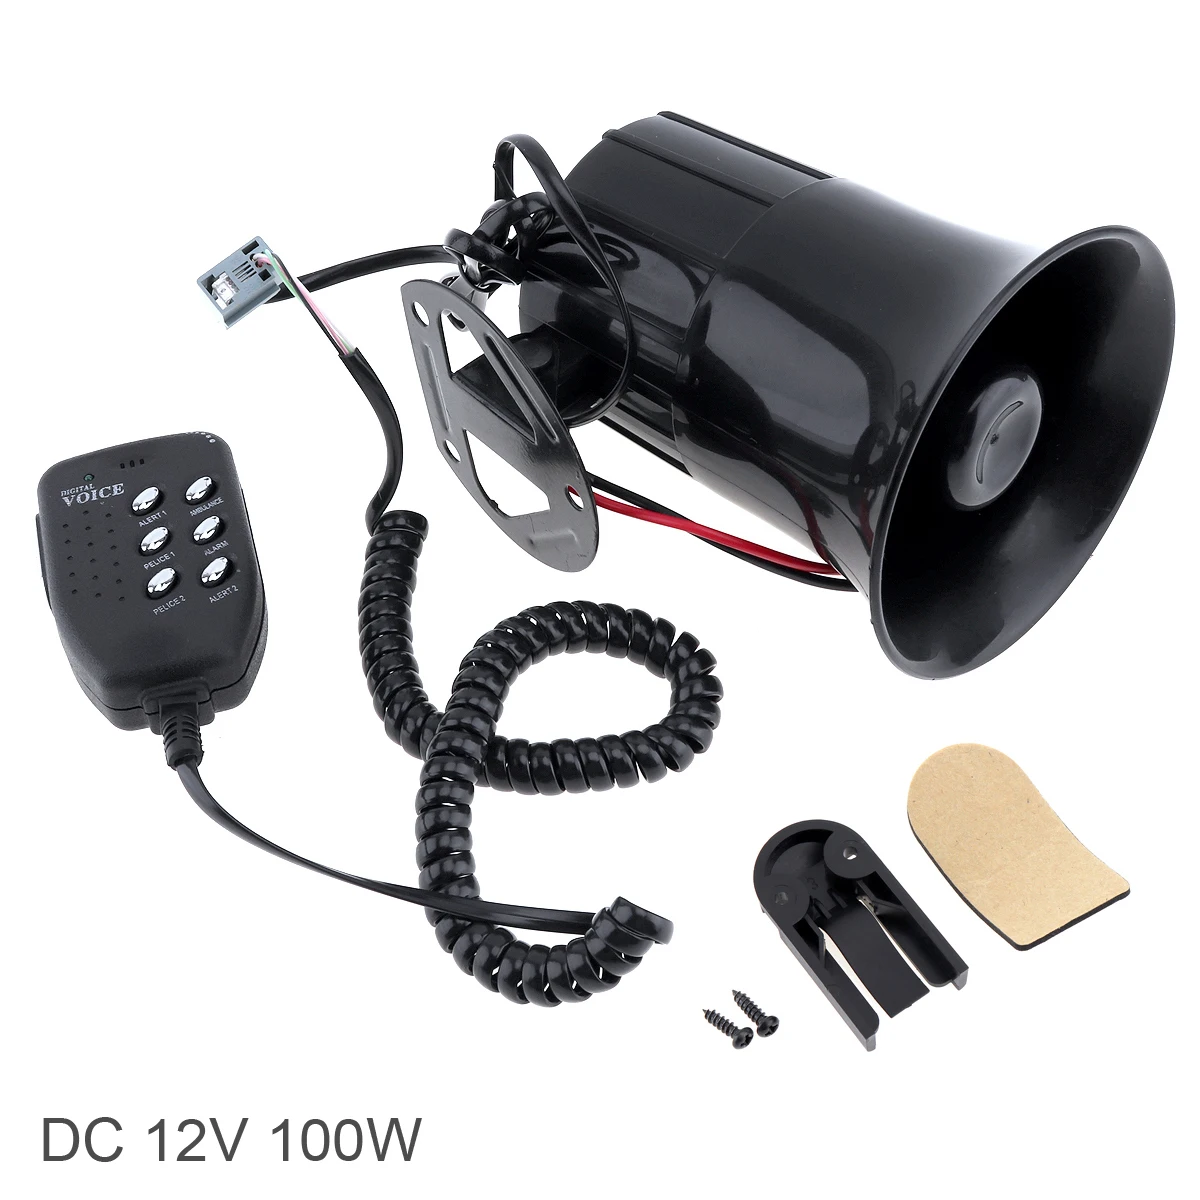 Bocina de aire negra para coche, megáfono con 6 sonidos, 12V, 100W, 120-150dB, sirena, altavoz, micrófono